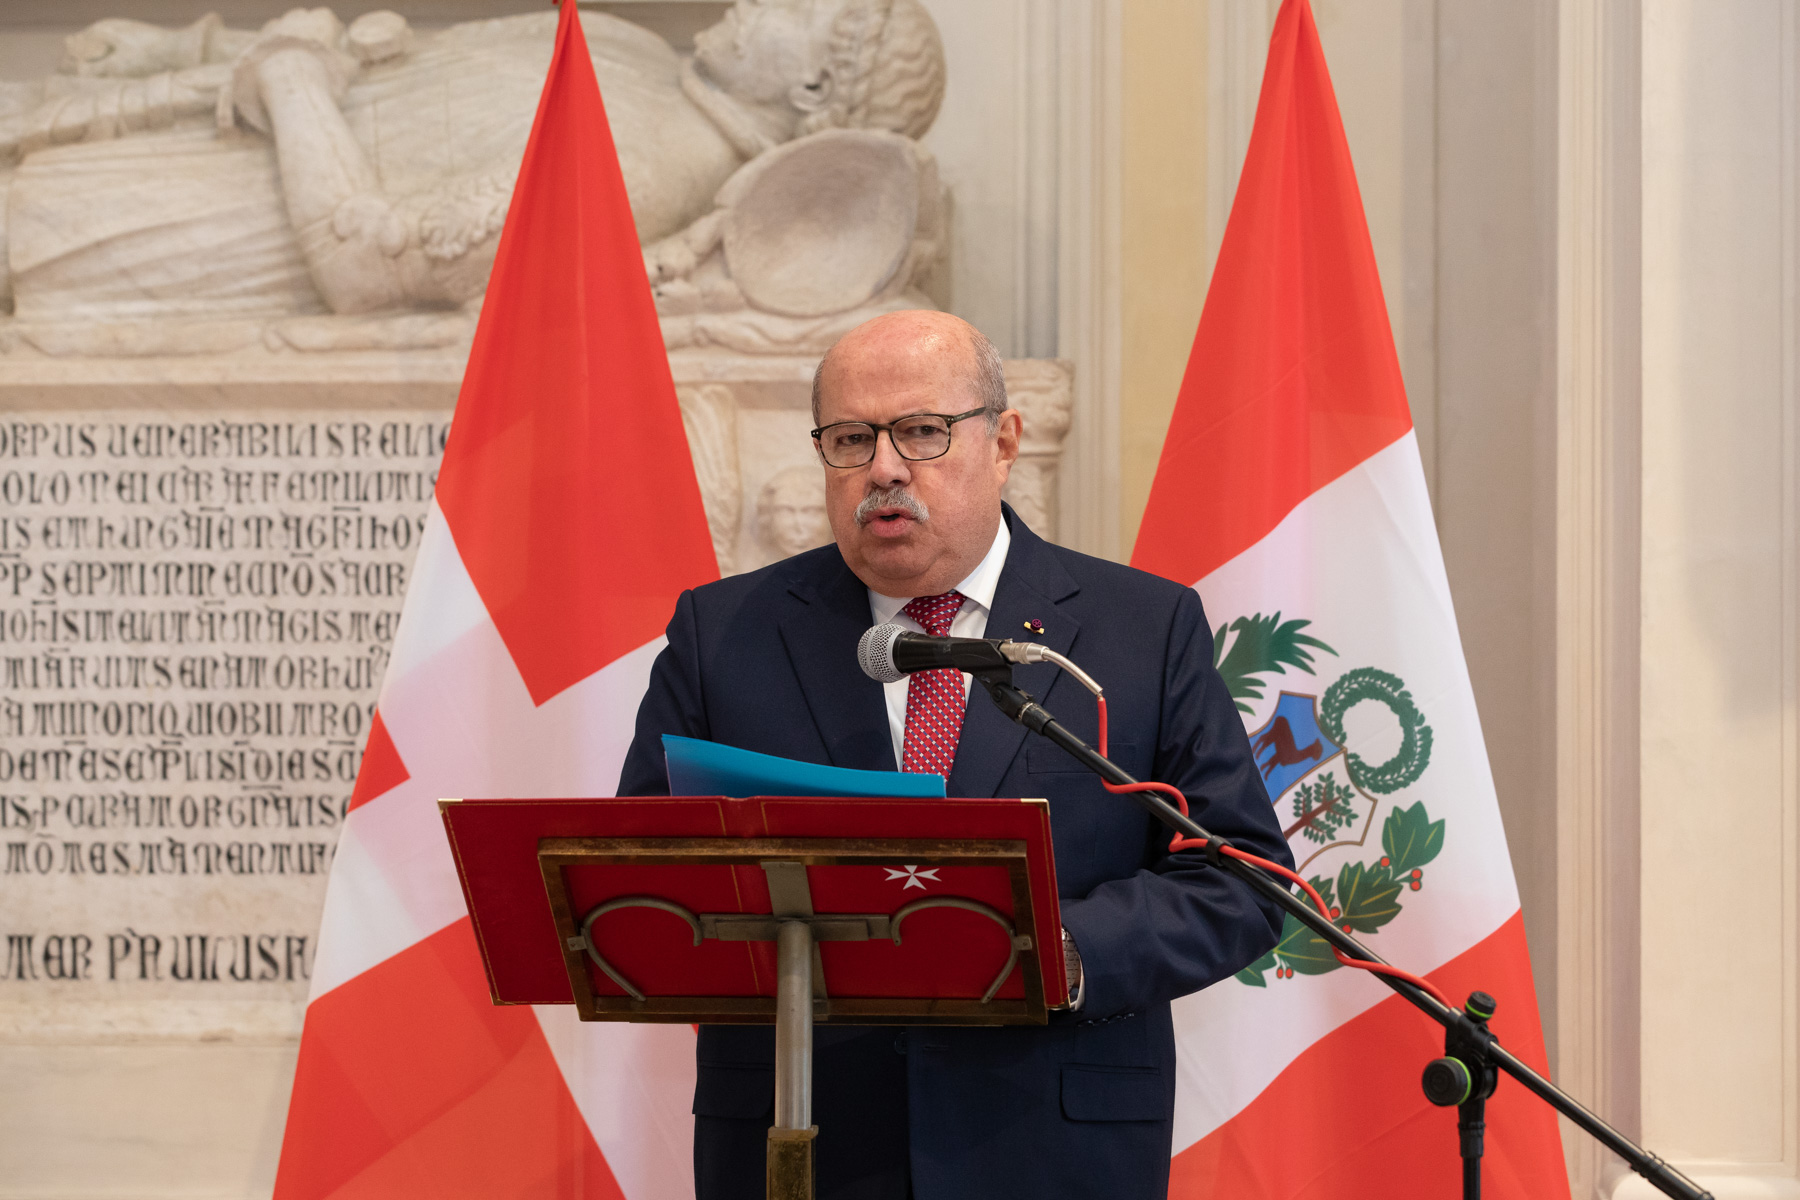 Se cumplen 70 años de relaciones diplomáticas con Perú